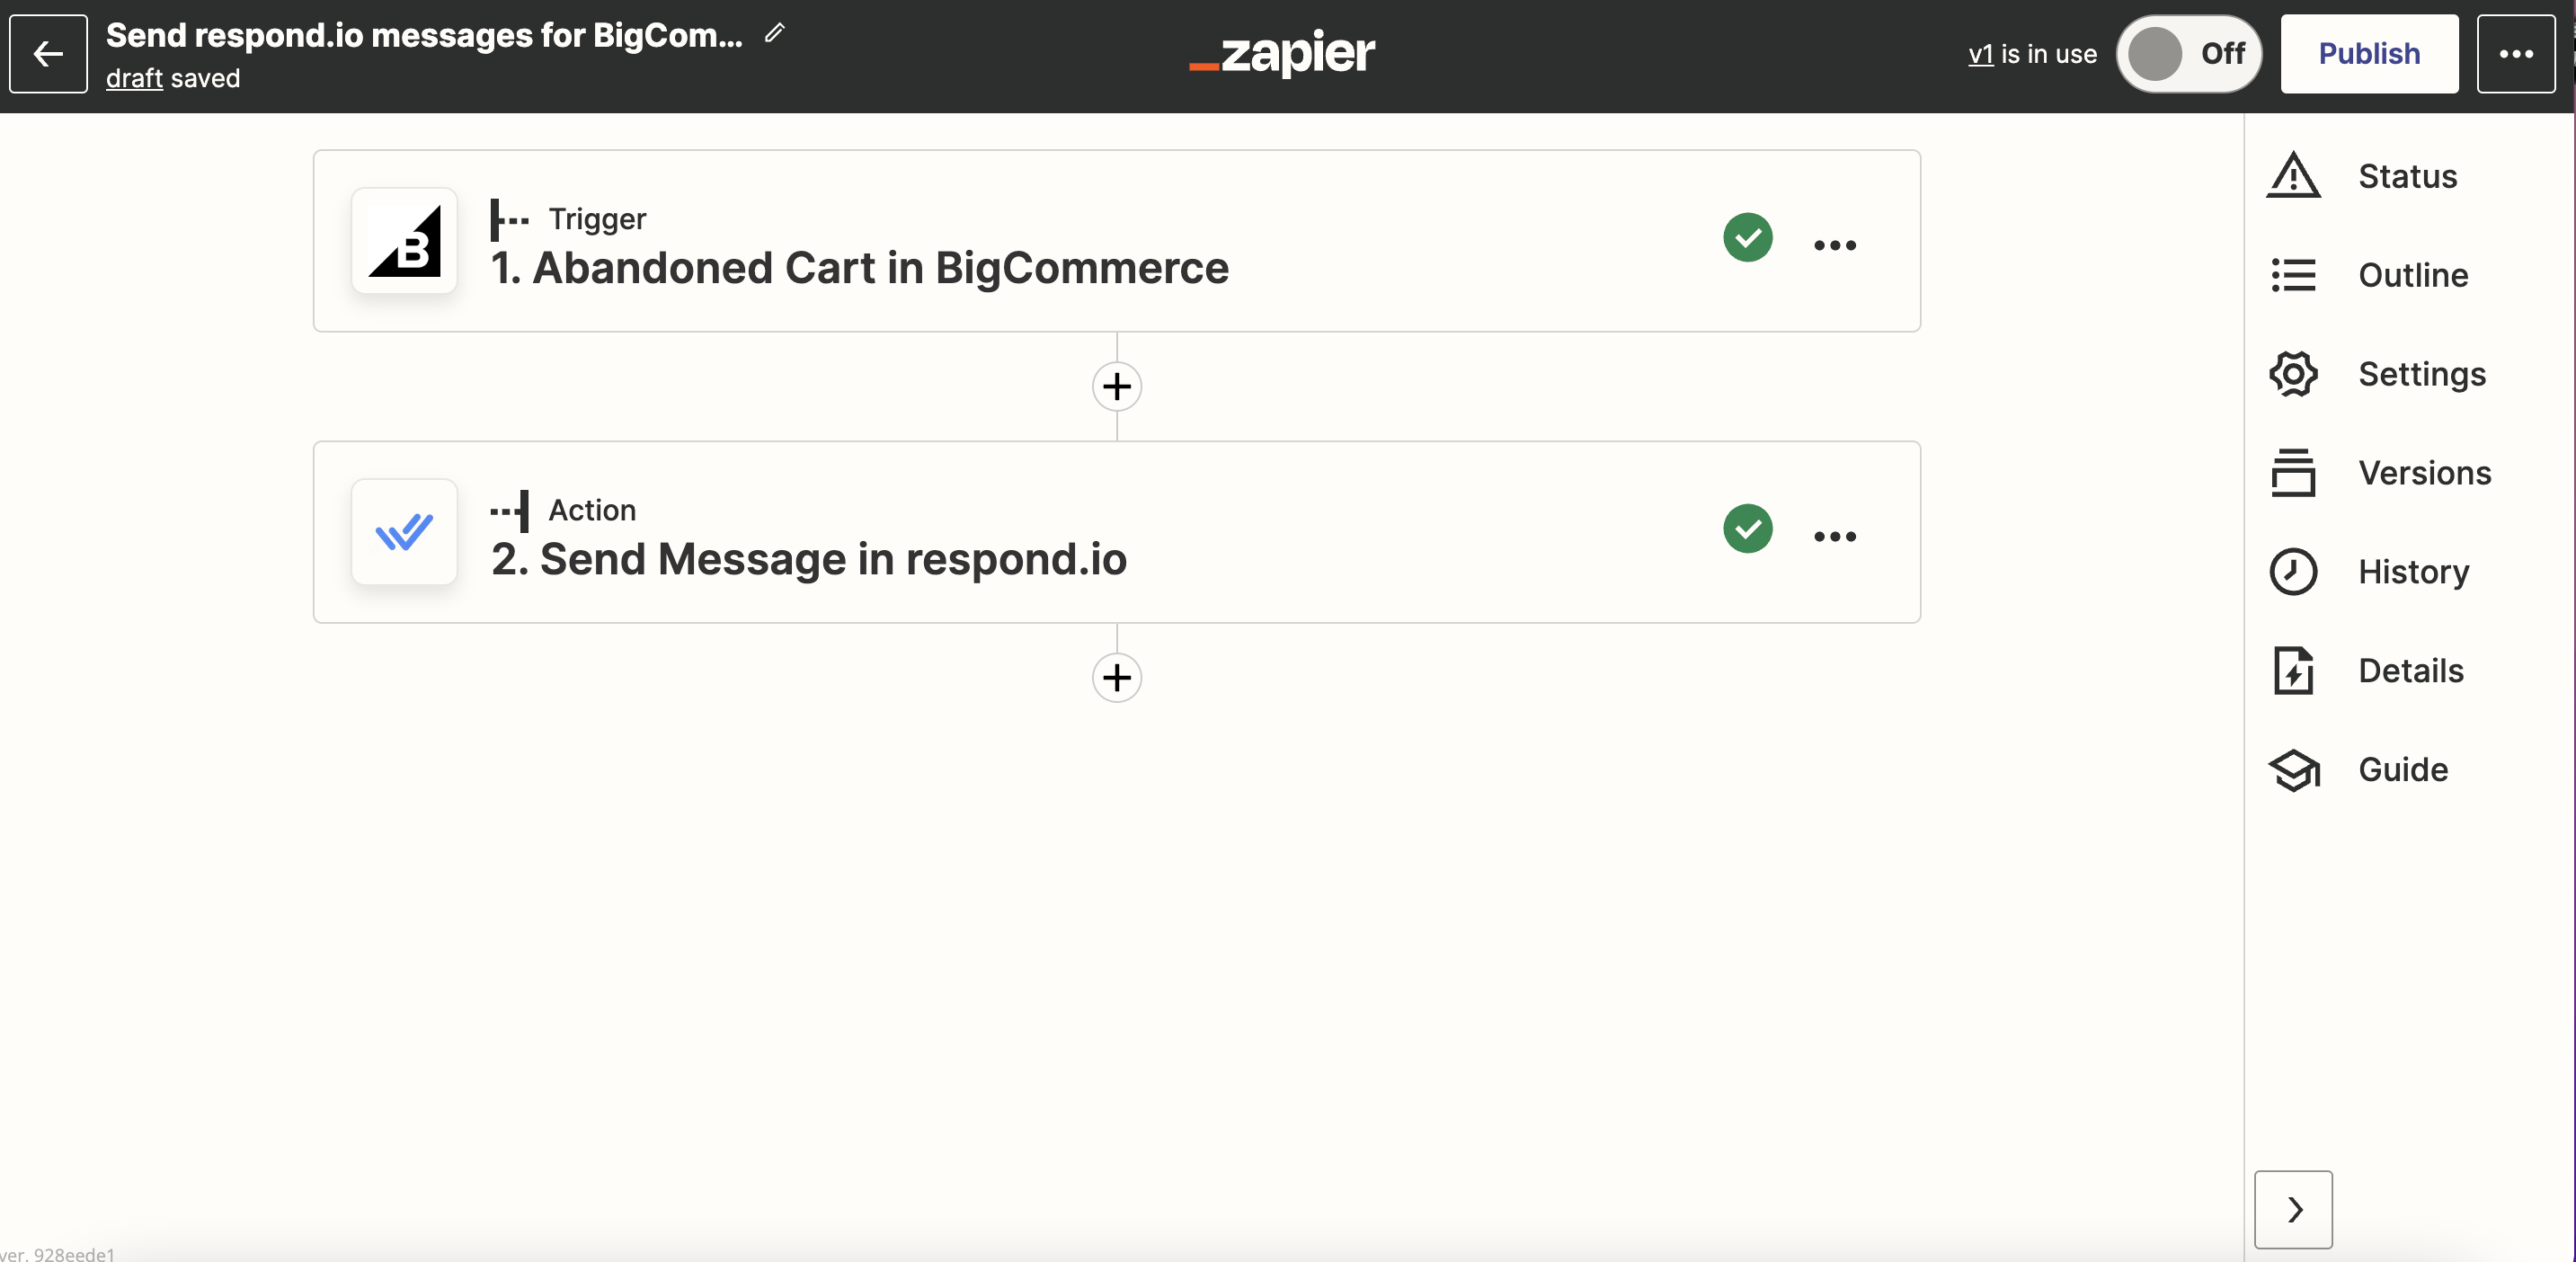 لقطة شاشة لقالب Zapier لإرسال رسائل سلة التسوق المهجورة